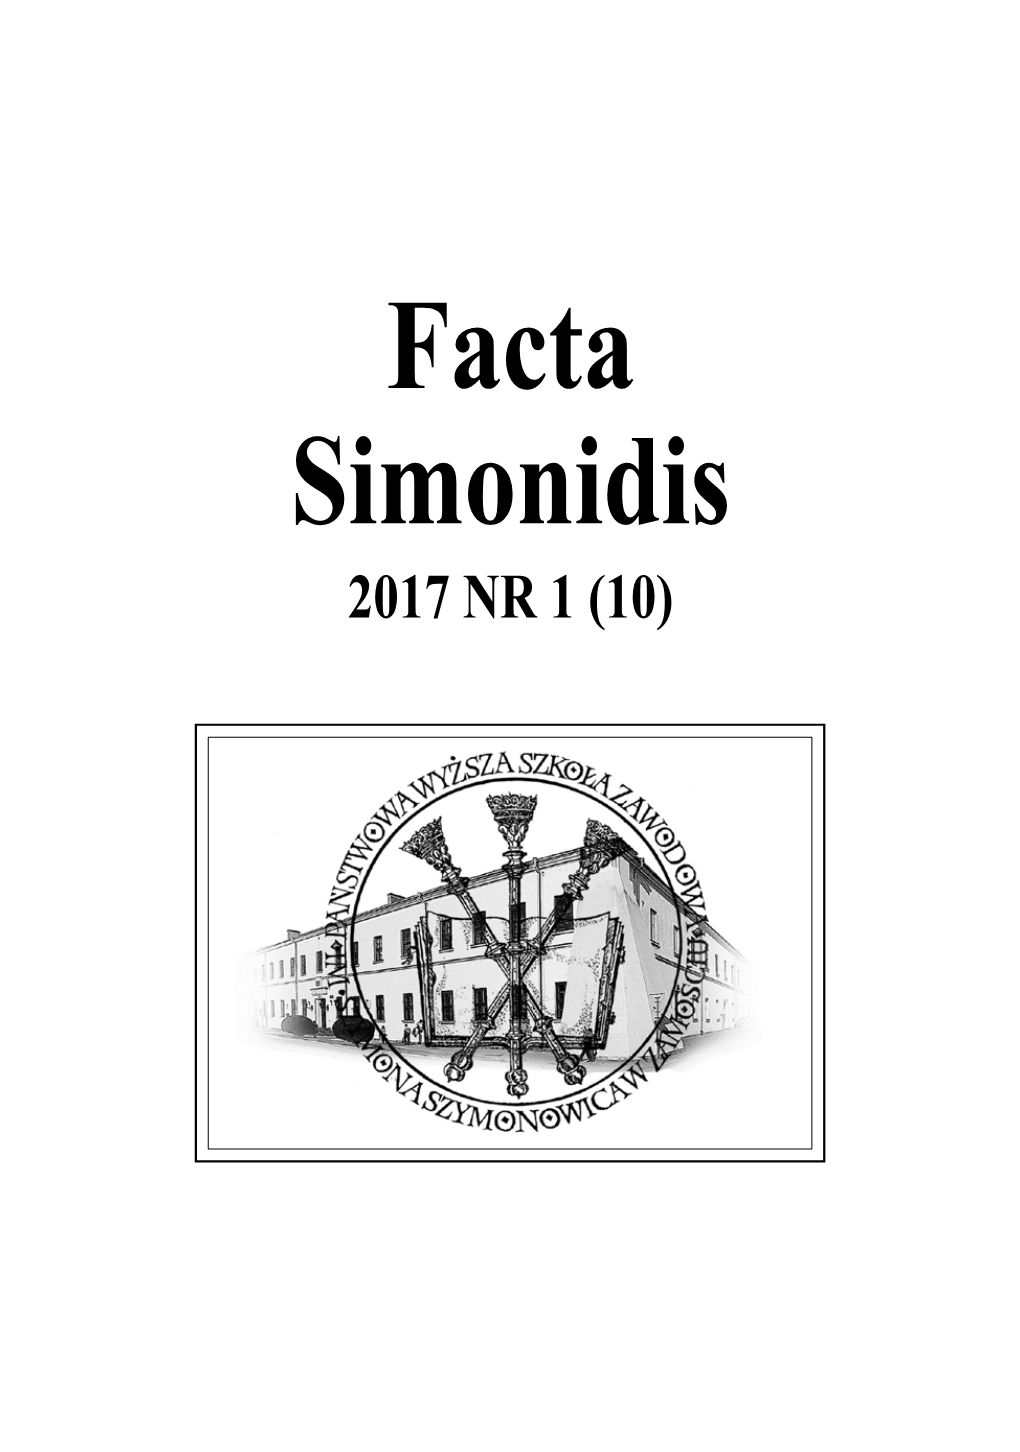 Facta Simonidis 2017 Nr 10